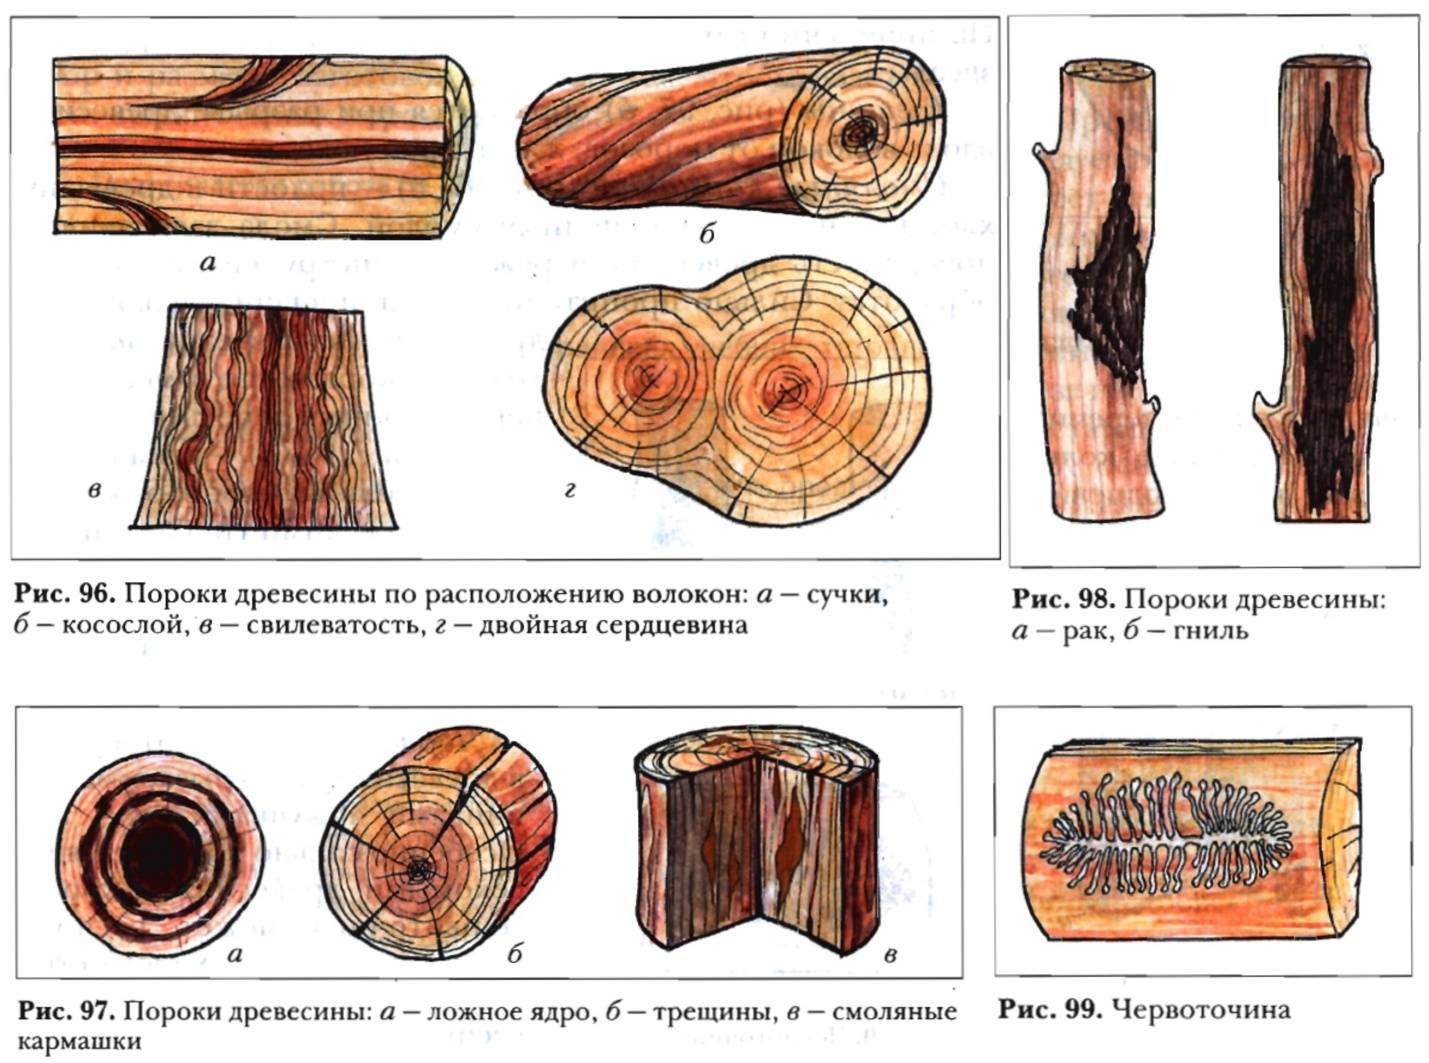 Описание дефектов, вредителей и пороков древесины, включая гниение и свилеватость